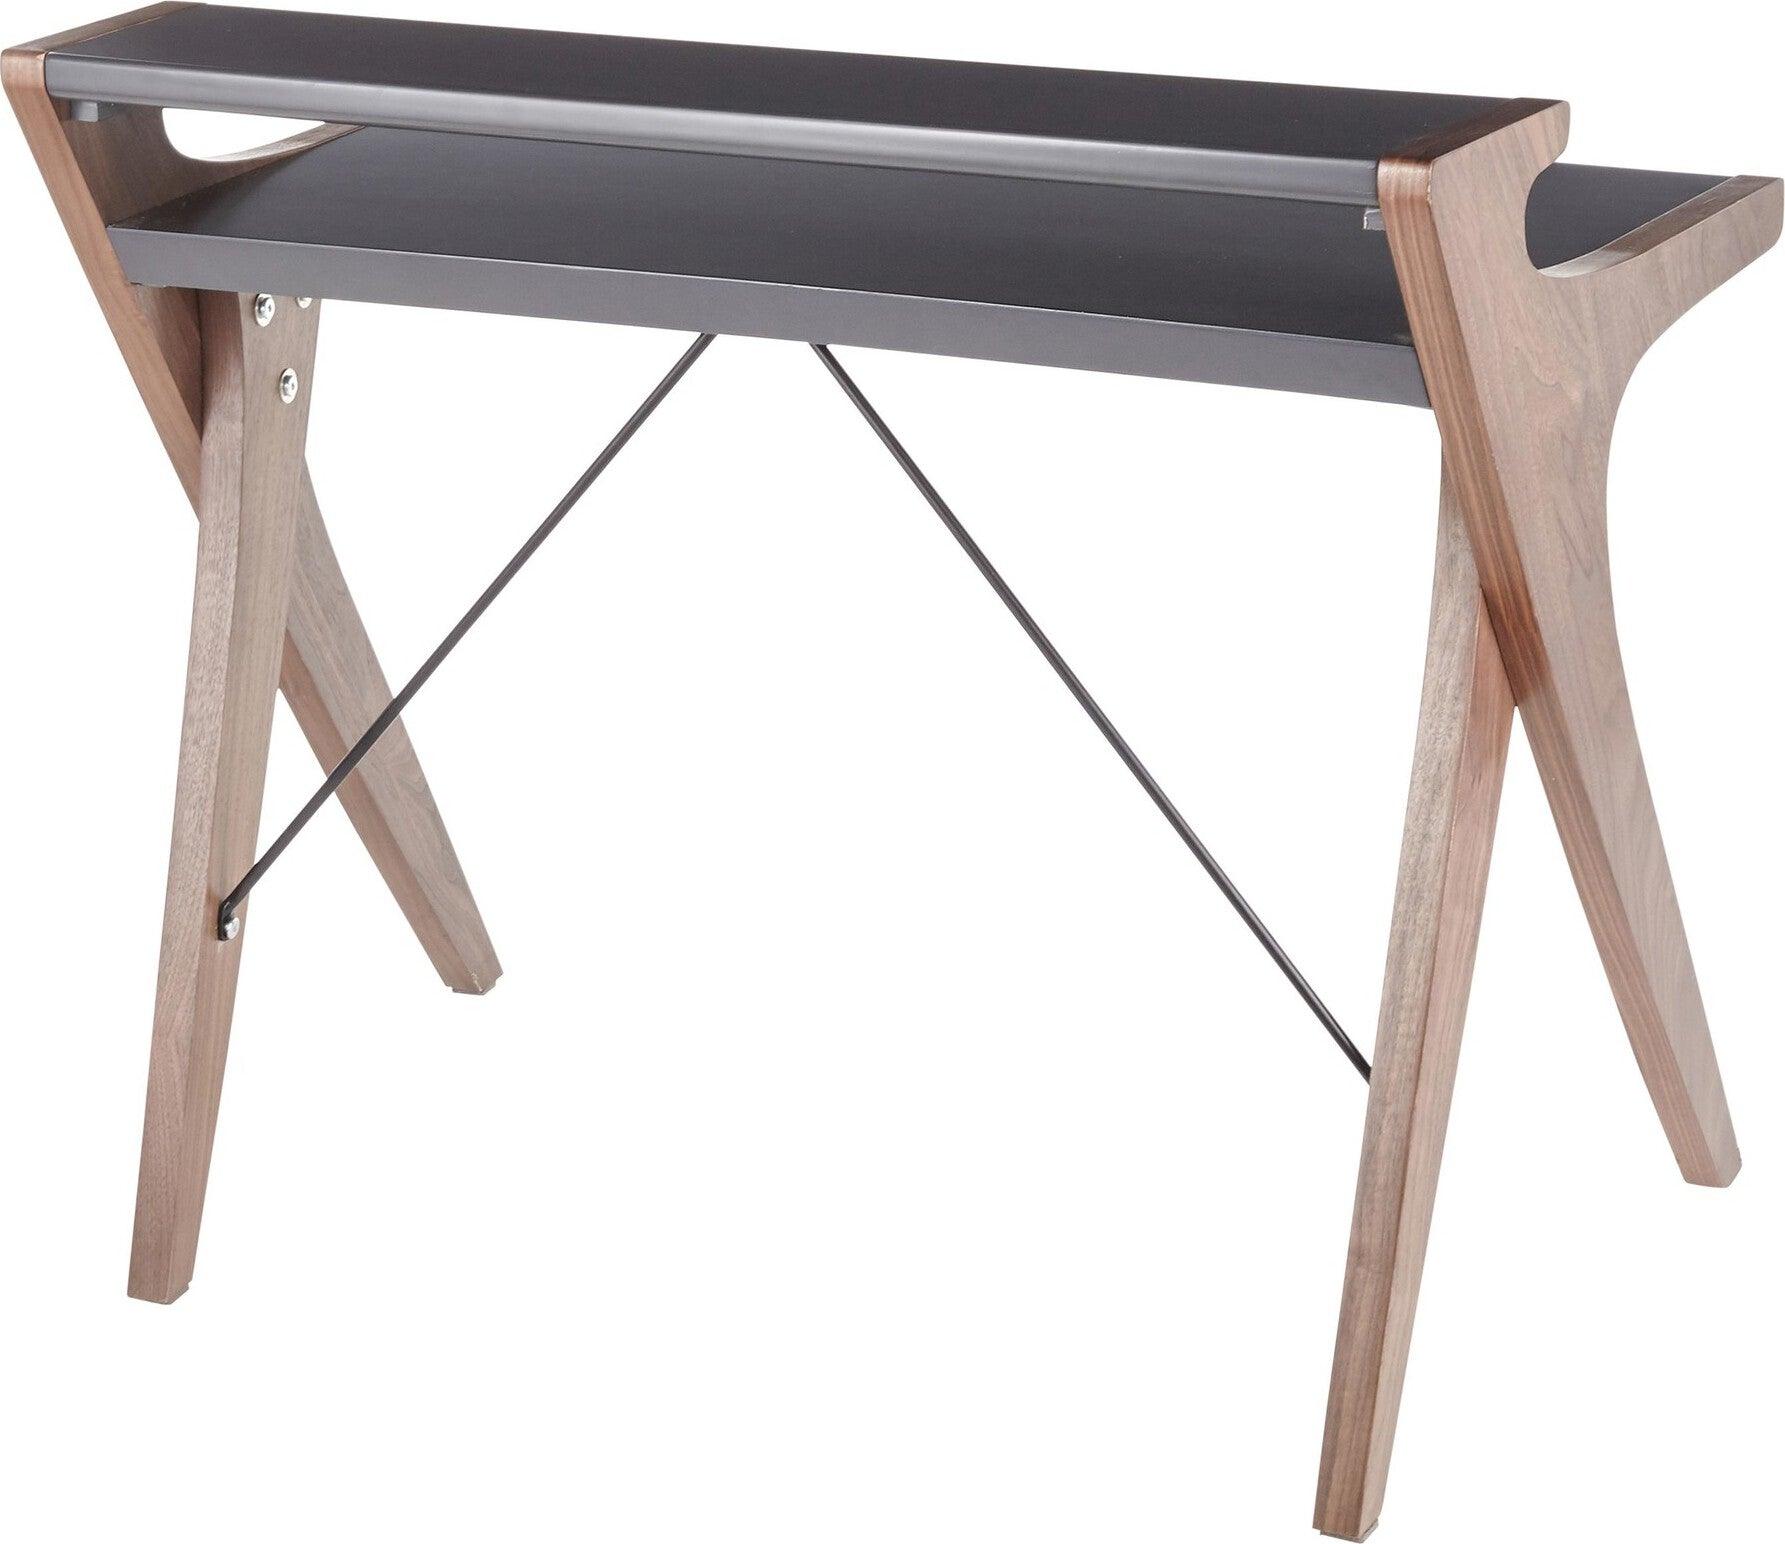 Lumisource Desks - Archer Desk Walnut & Gray